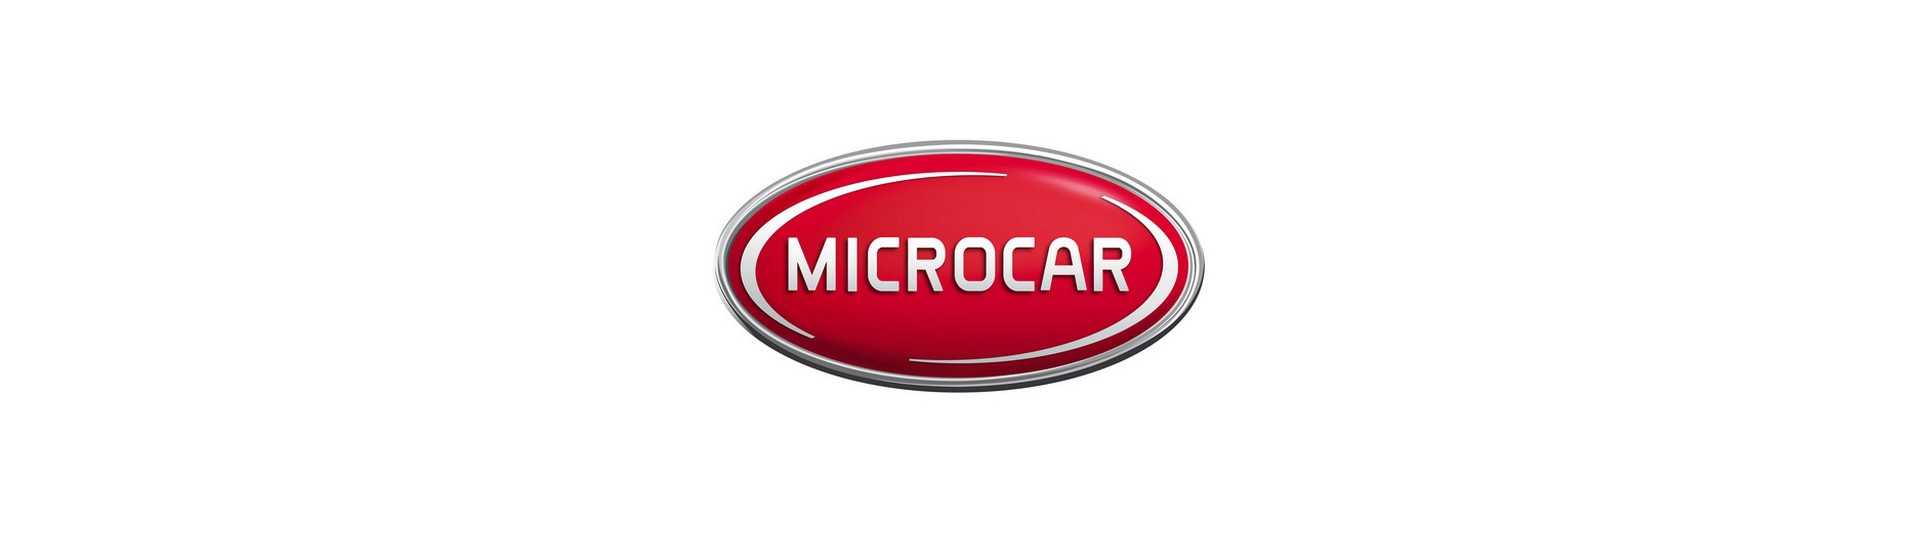 Piezas ocasionales Microcar au meilleur prix